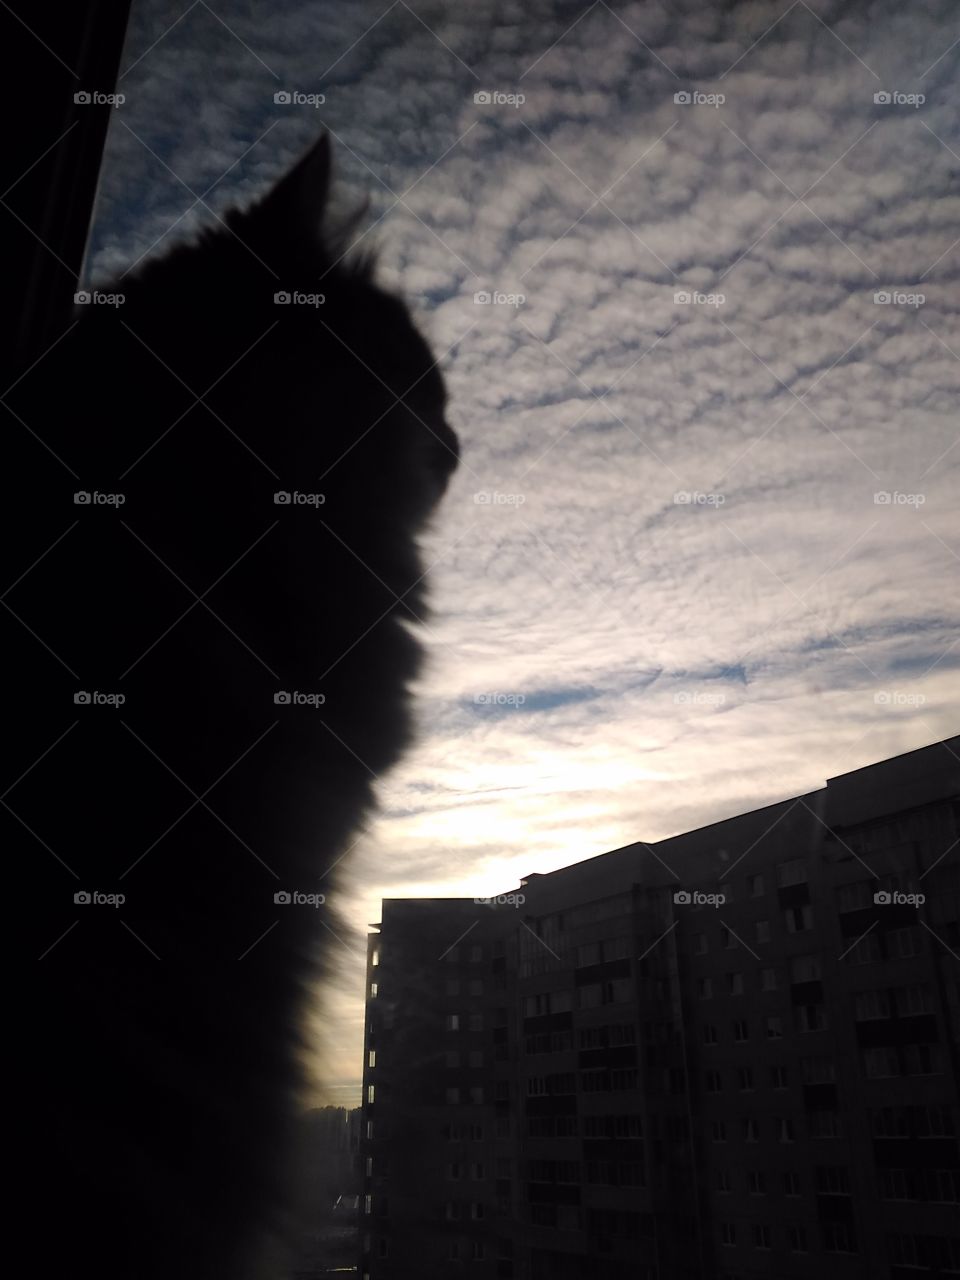 кошка смотрит а небо с 15 этажа